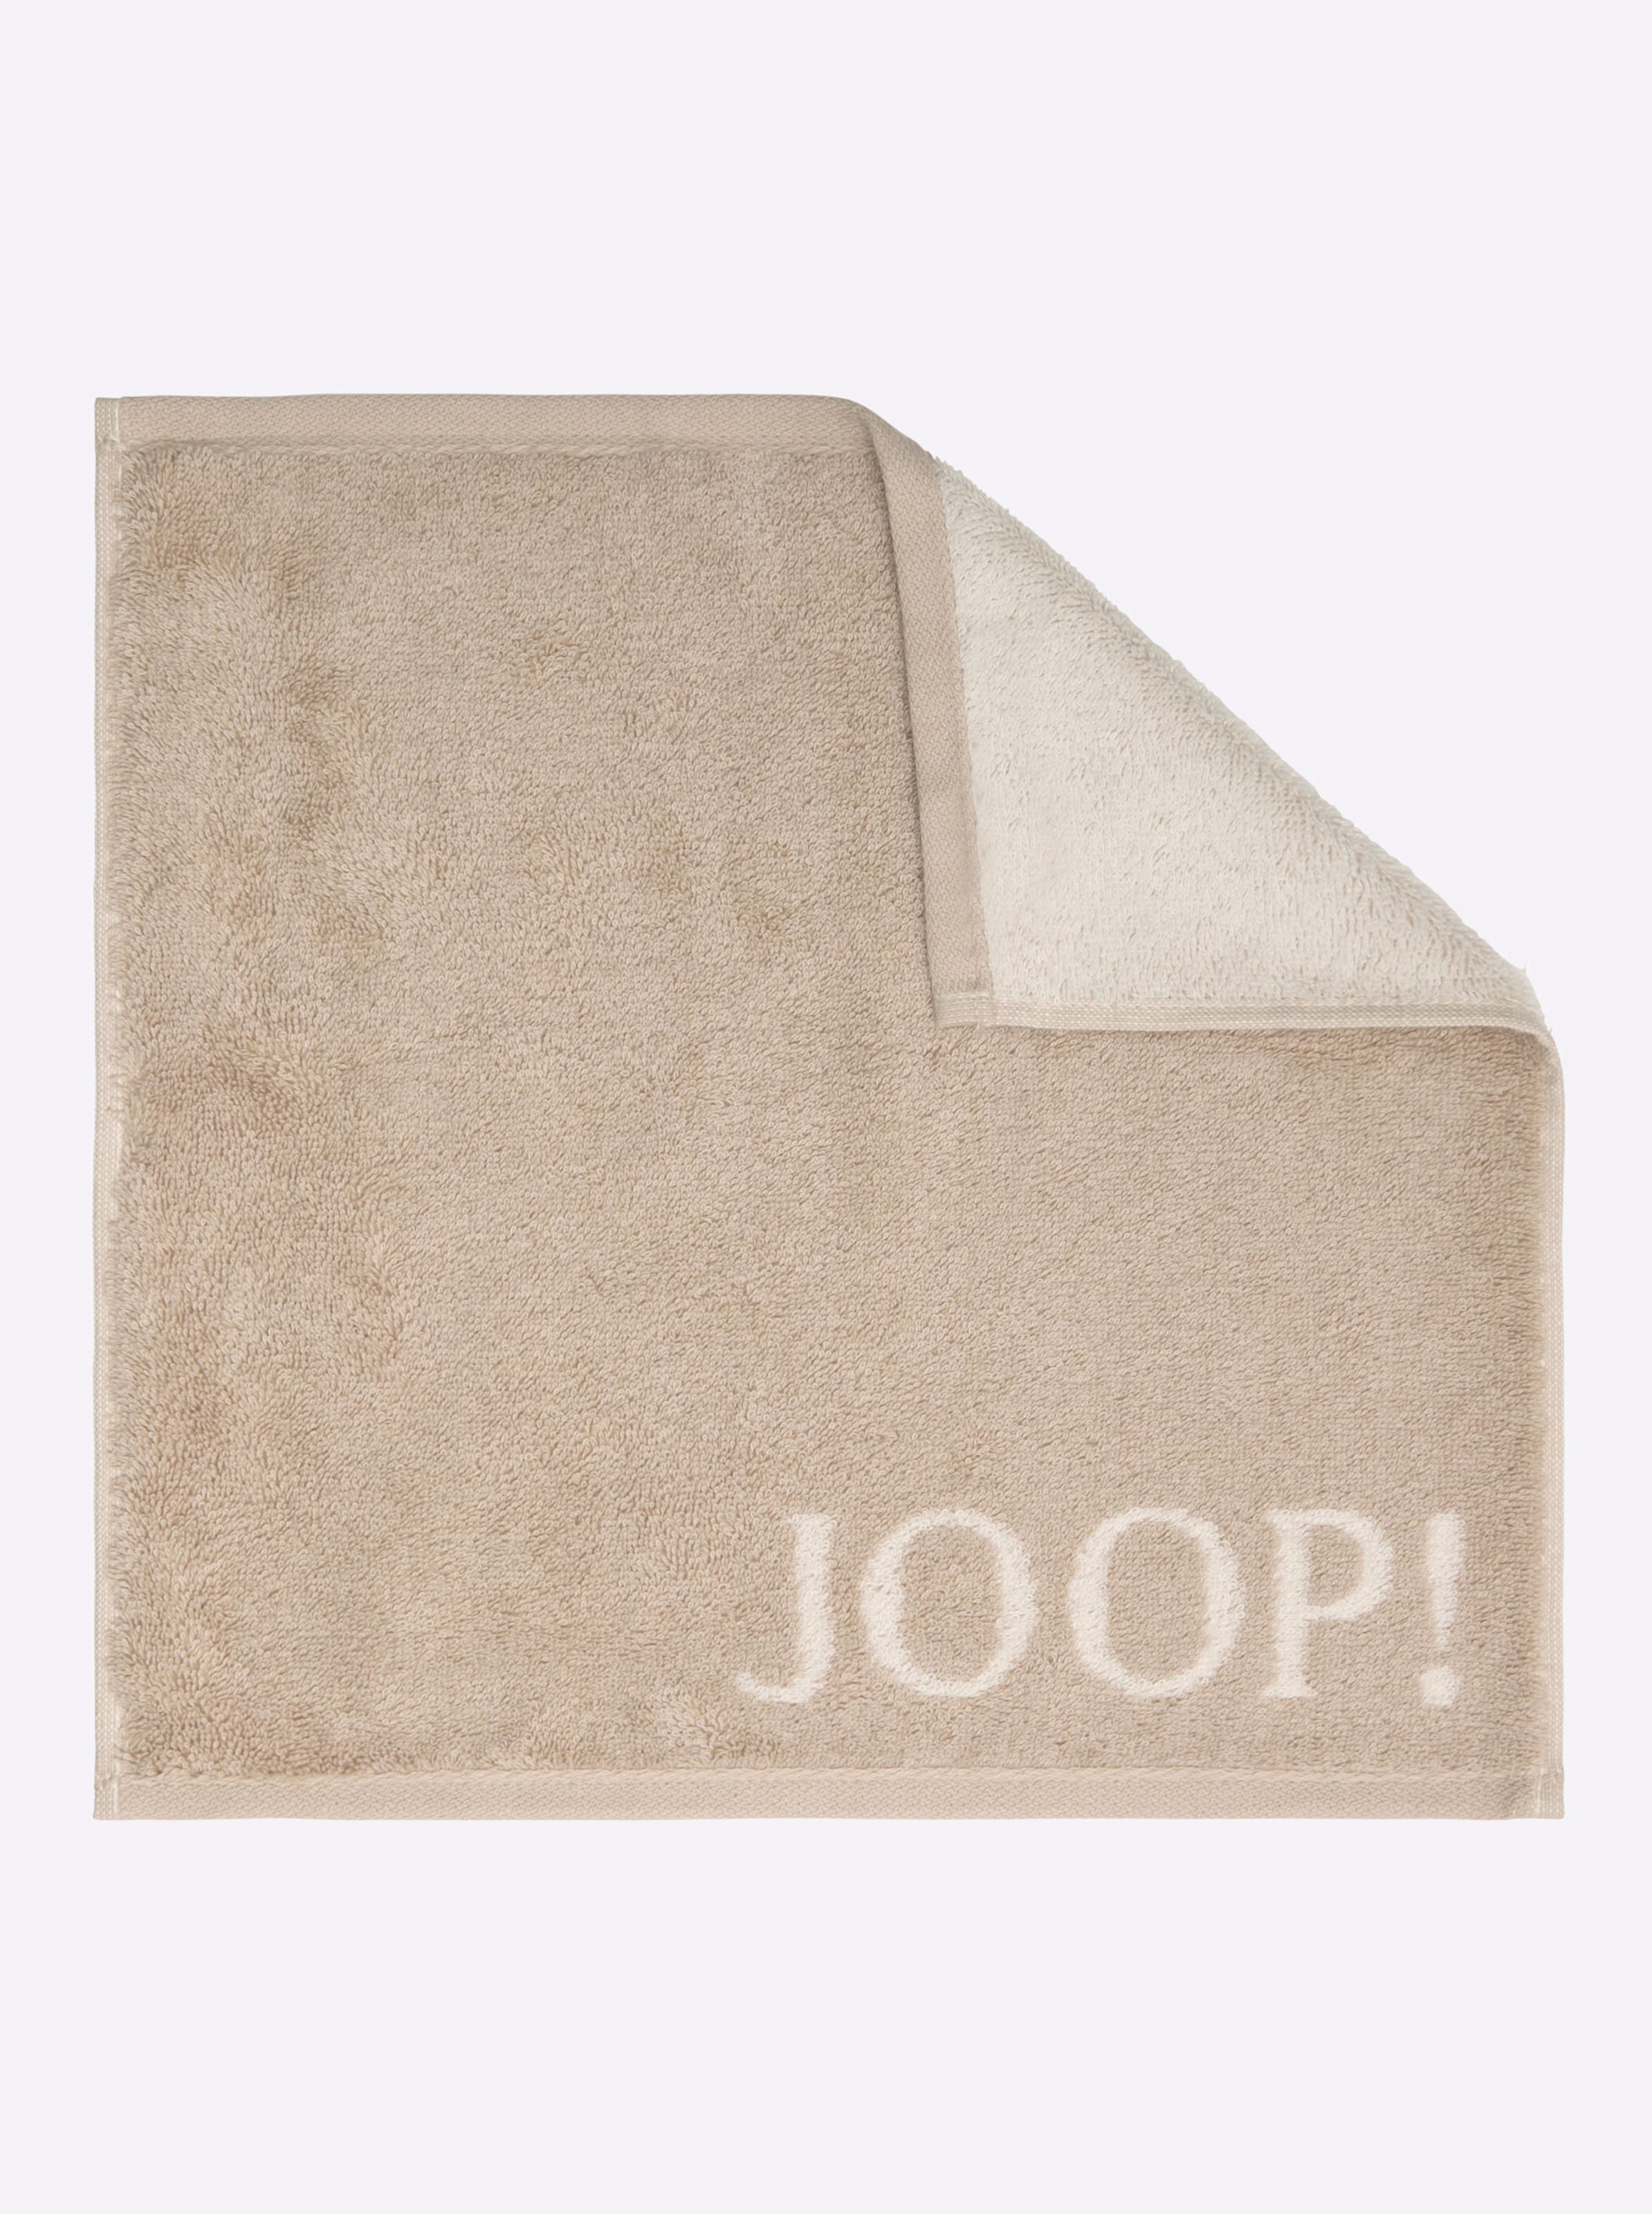 BT Pro günstig Kaufen-Handtuch in sand von JOOP!. Handtuch in sand von JOOP! <![CDATA[Dieses elegante Handtuch-Programm aus dem Hause JOOP! macht Ihr Bad zur luxuriösen Wellness-Oase! Attraktives Hell-Dunkel-Dessin mit eingewebtem JOOP!-Logo. Extra weiche, super flauschige Pr